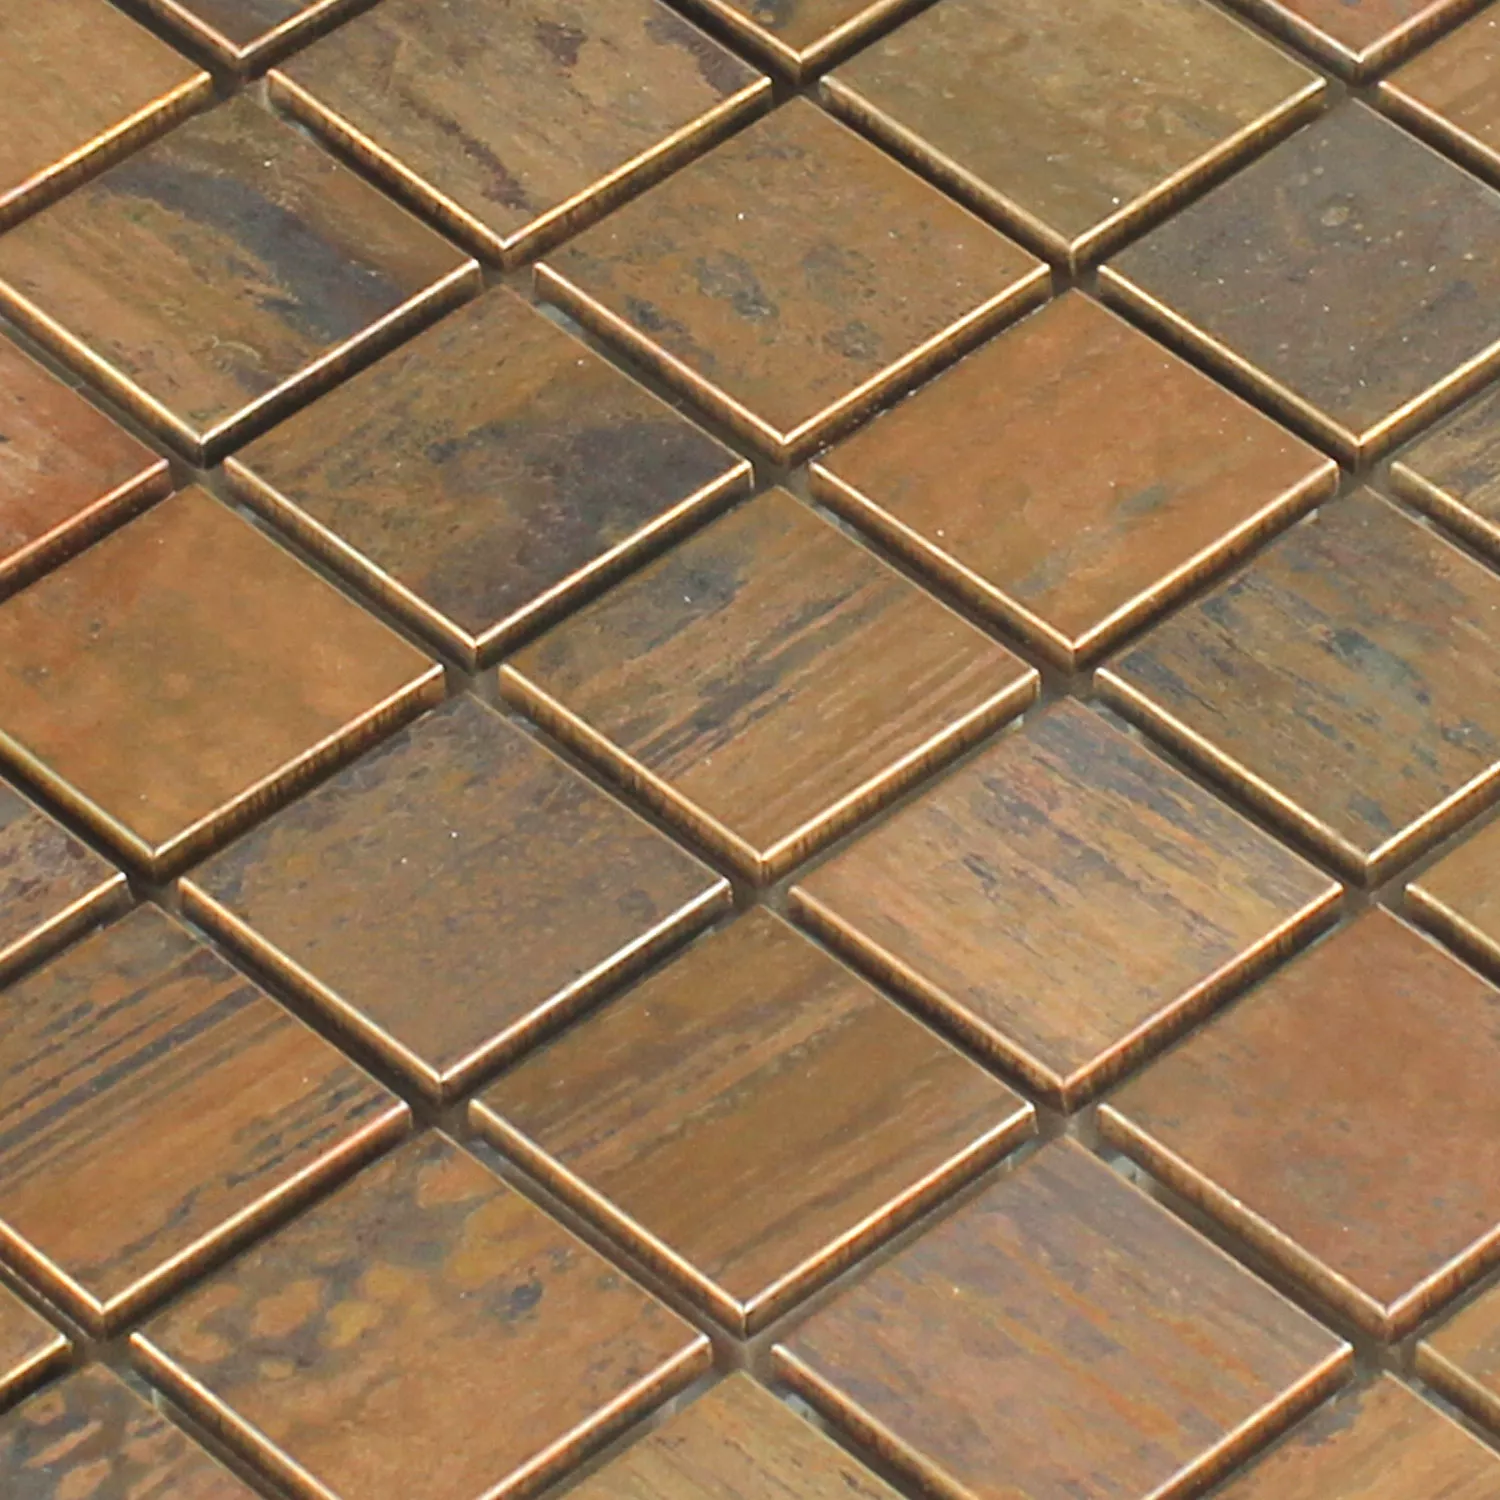 Sample Mosaic Tiles Copper Metal Design 